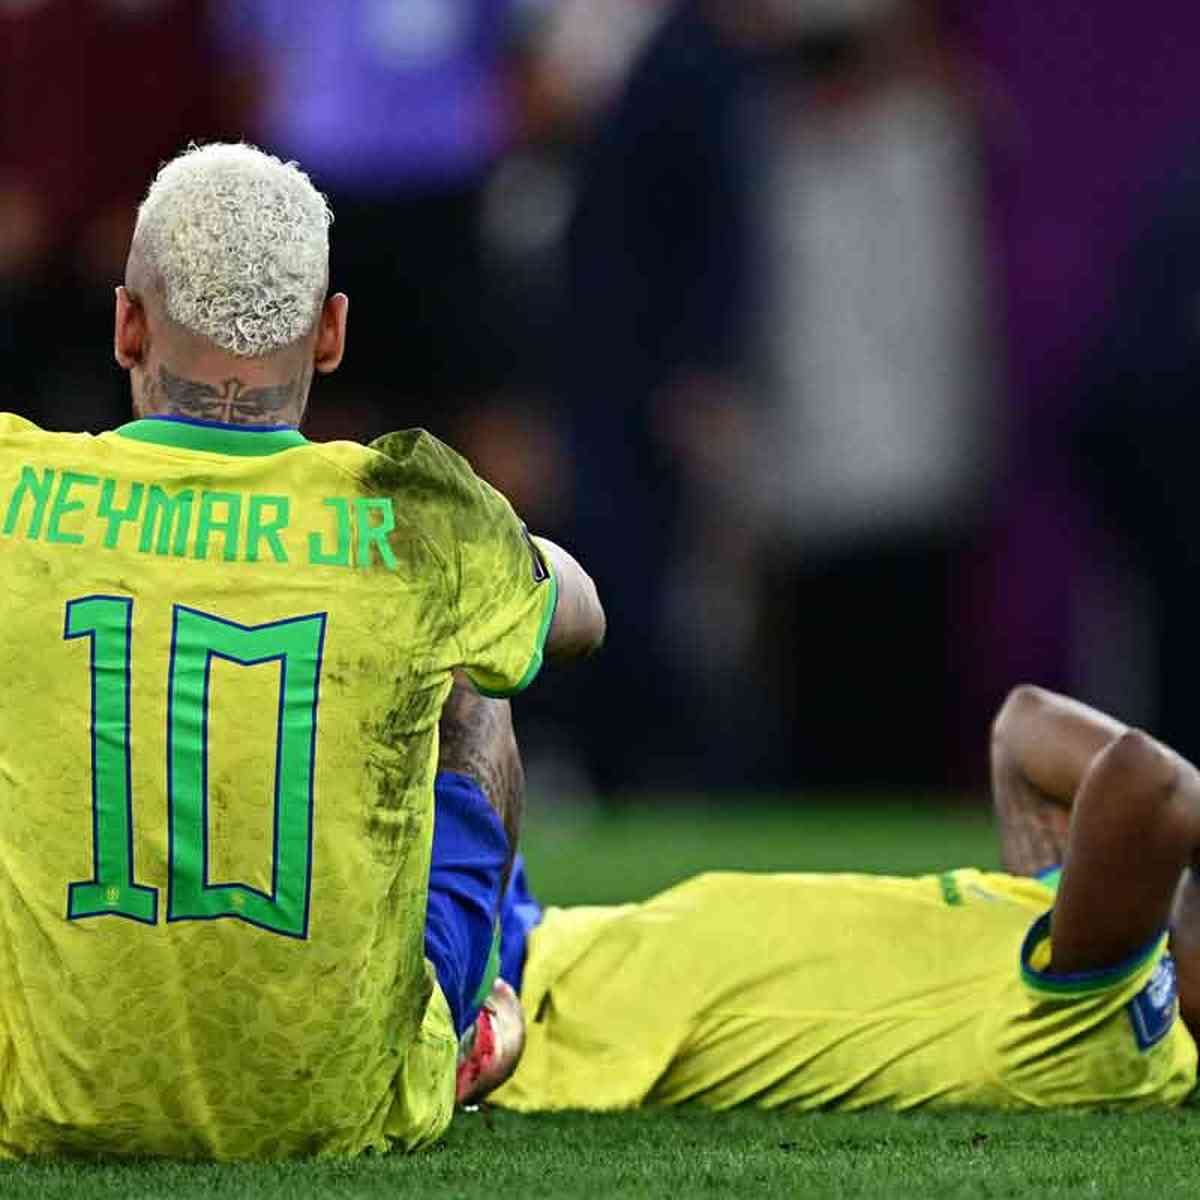 Neymar não faz falta? Pergunte isso para os torcedores e os